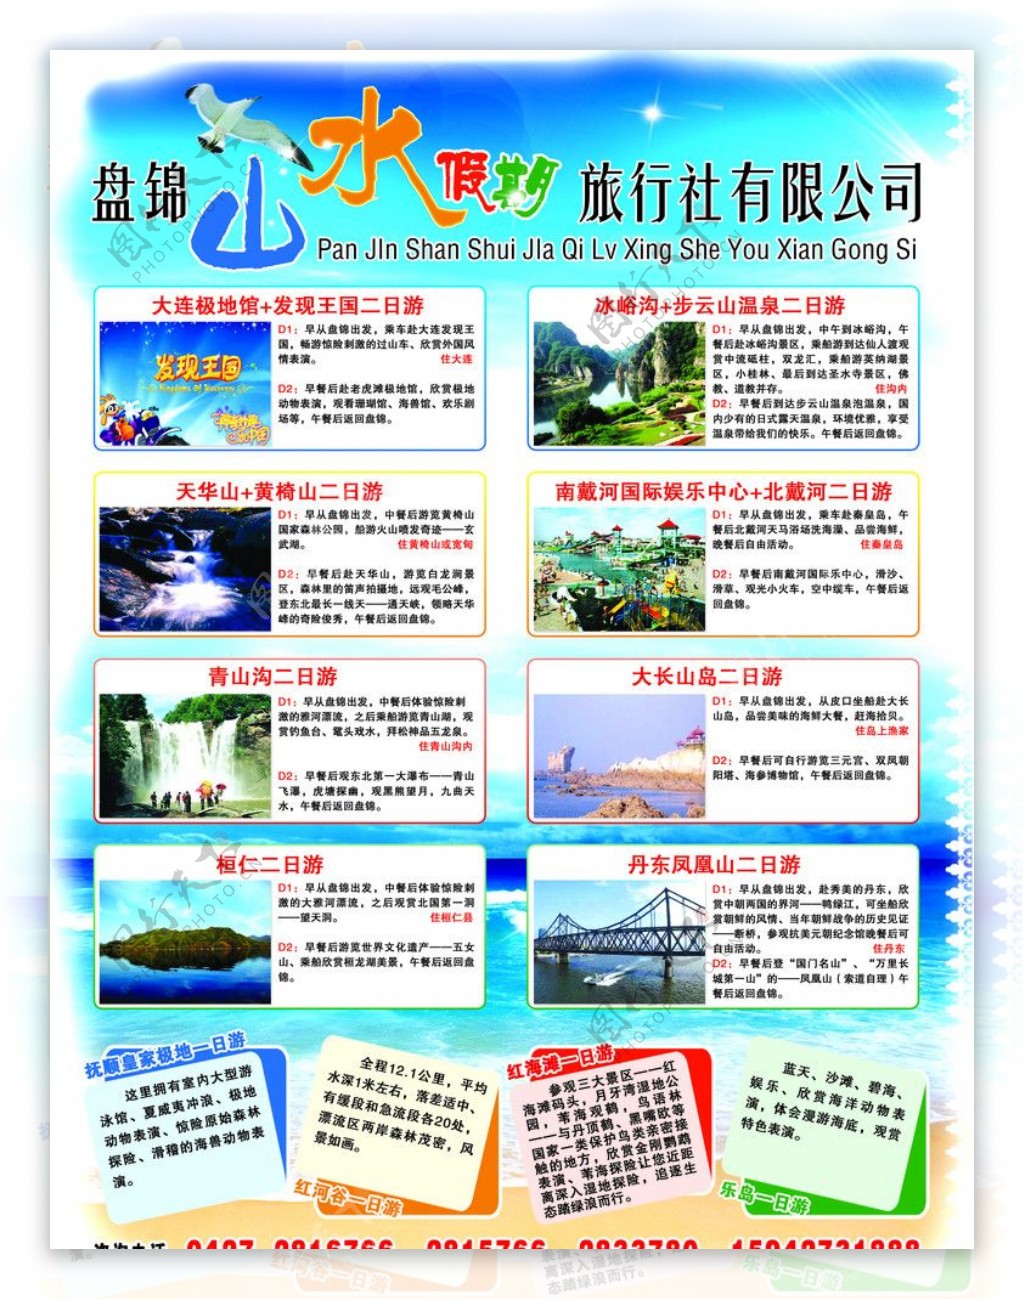 山水假日旅行社宣传单图片